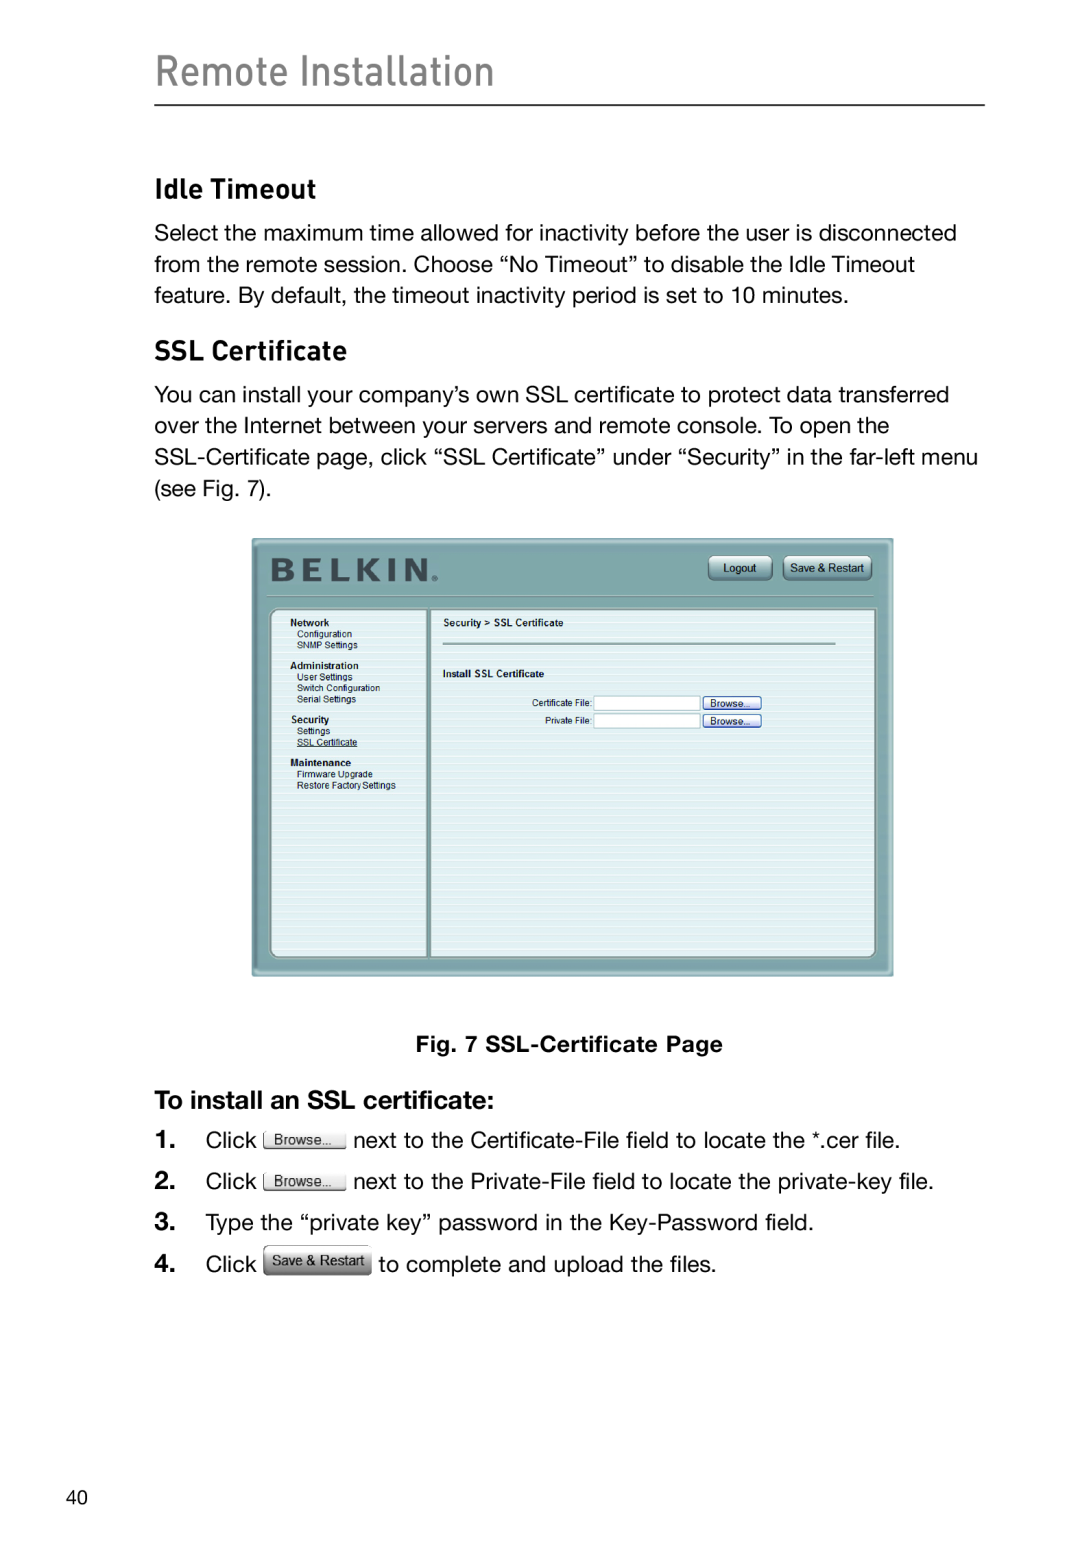 Belkin F1DP108G Idle Timeout, SSL Certificate, Remote Installation, To install an SSL certificate, SSL-Certificate Page 